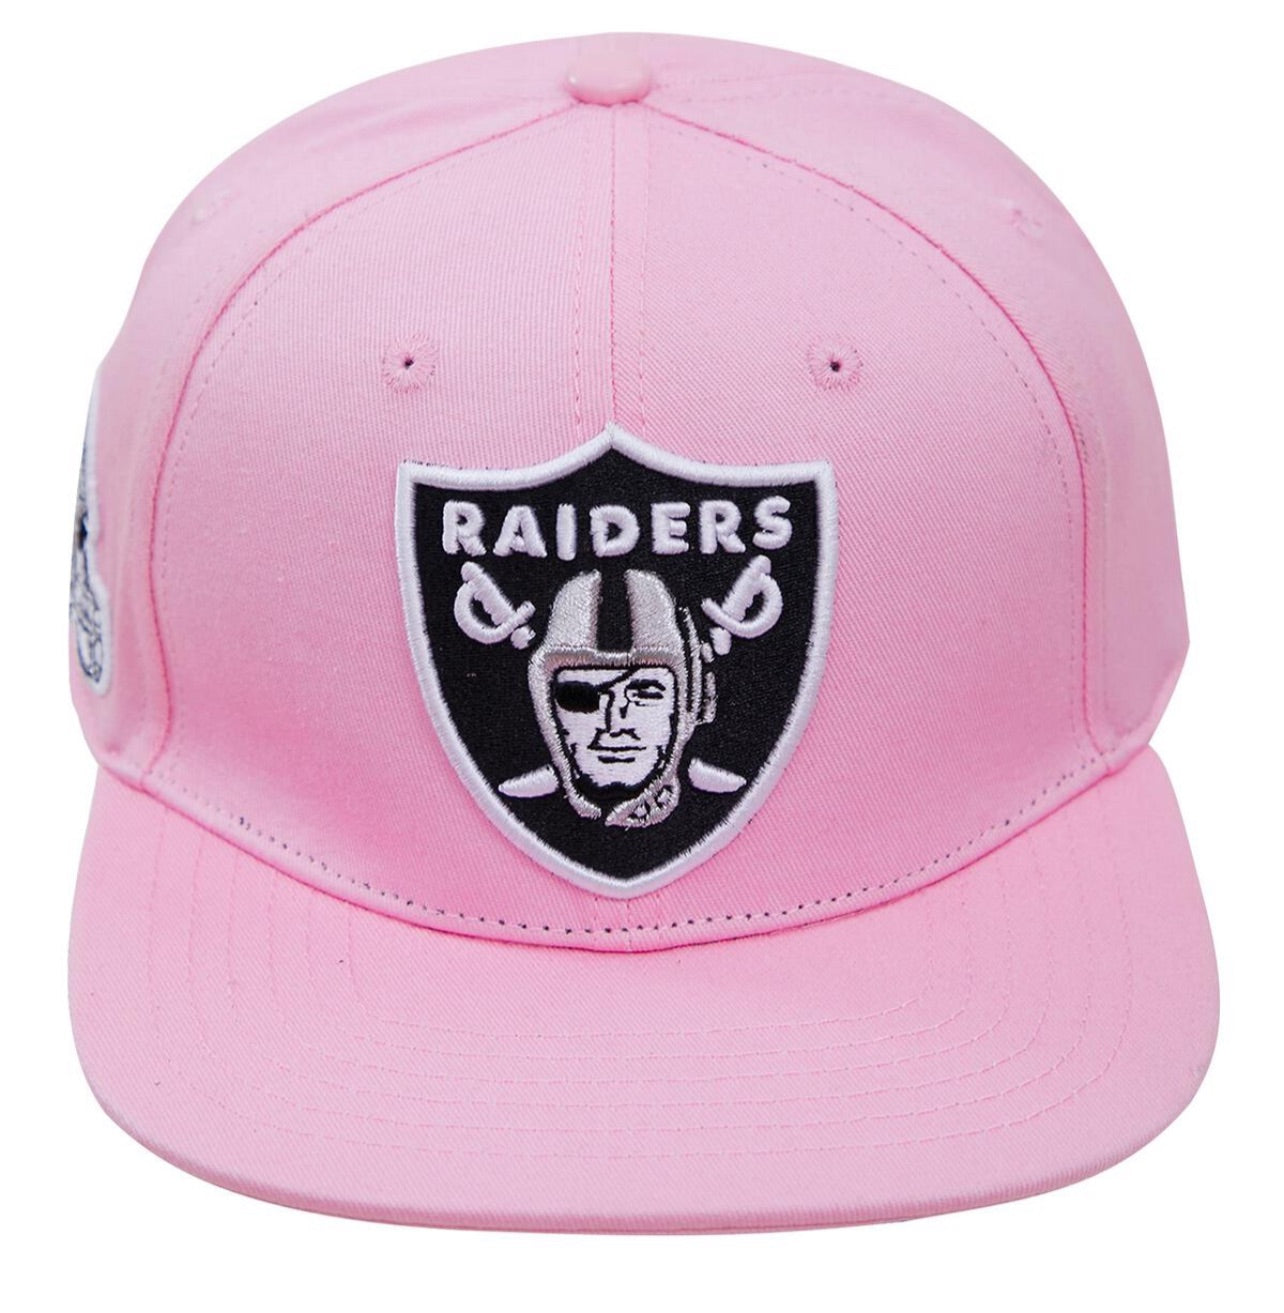 Pro Standard Las Vegas Raiders SnapBack Hat